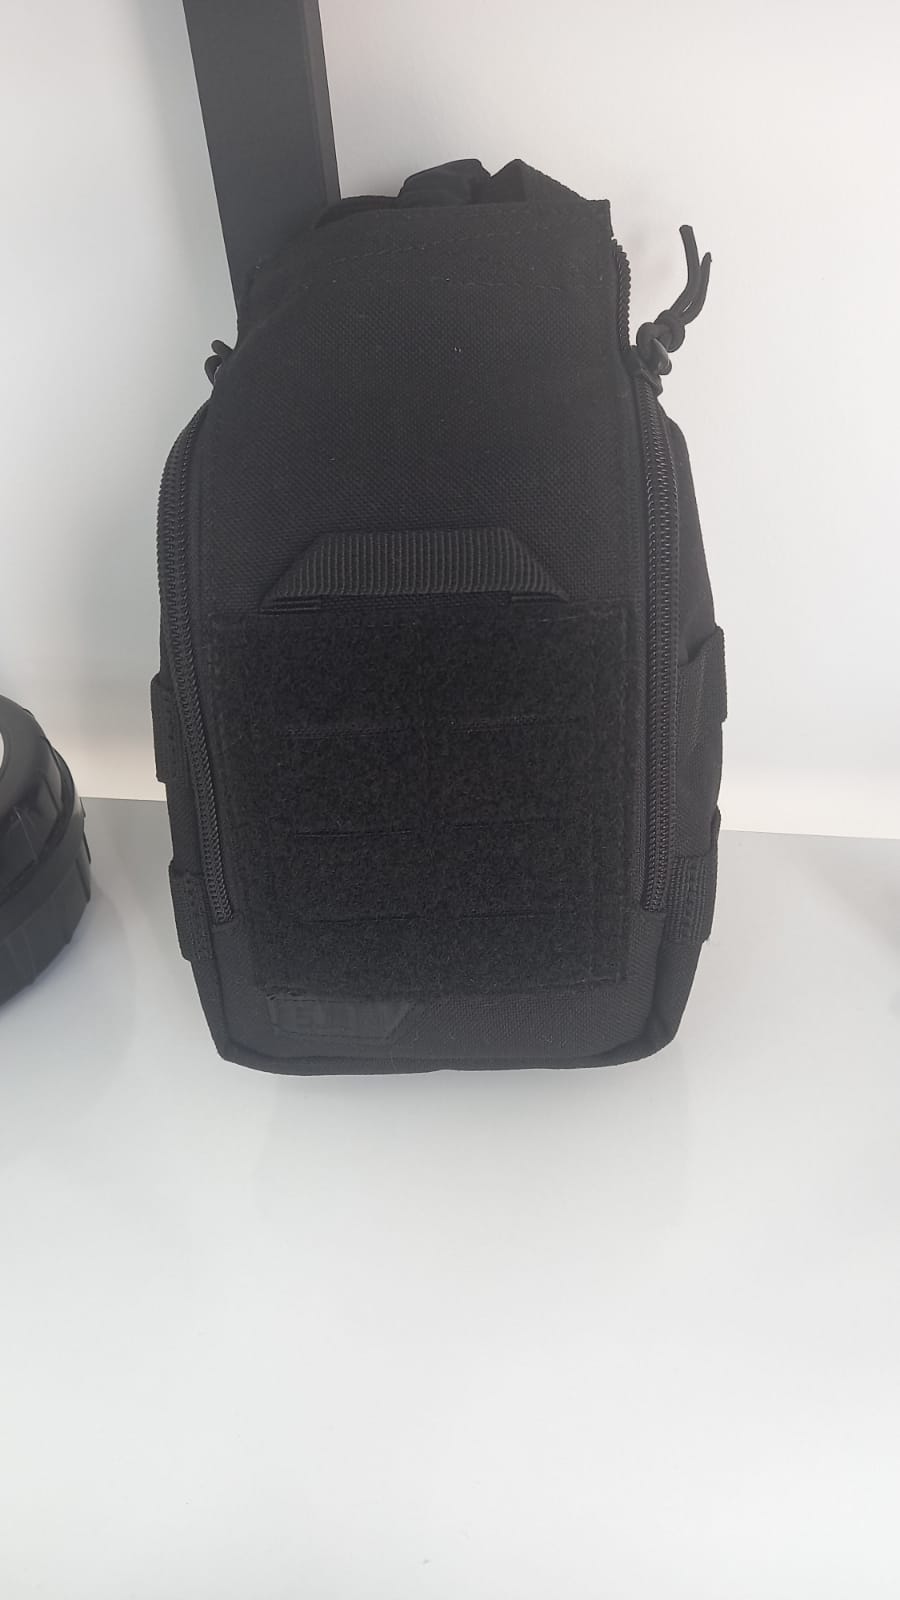 IIFAKs Kits With Backpack